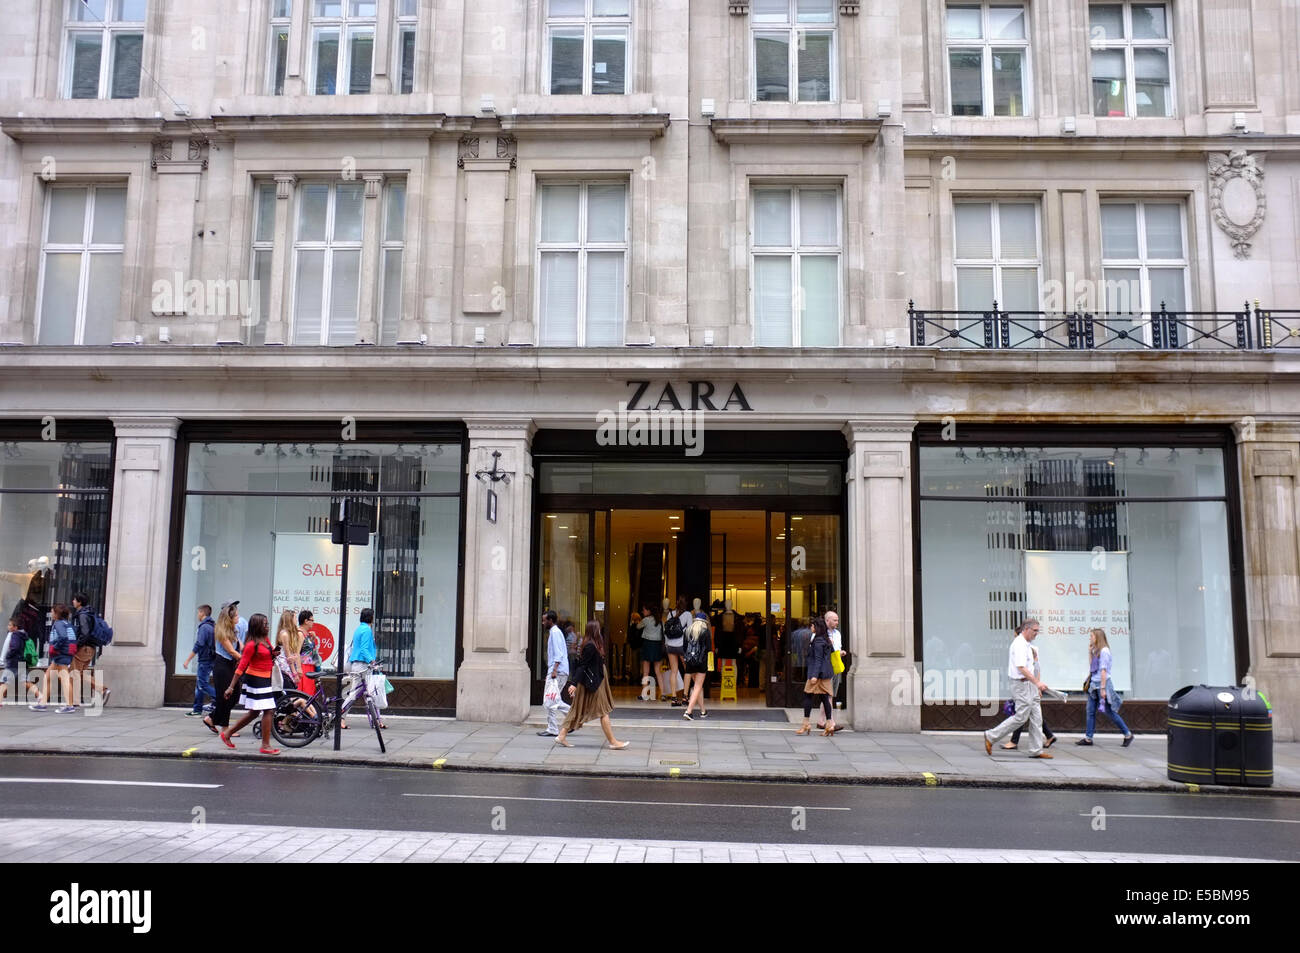 biggest zara store in london